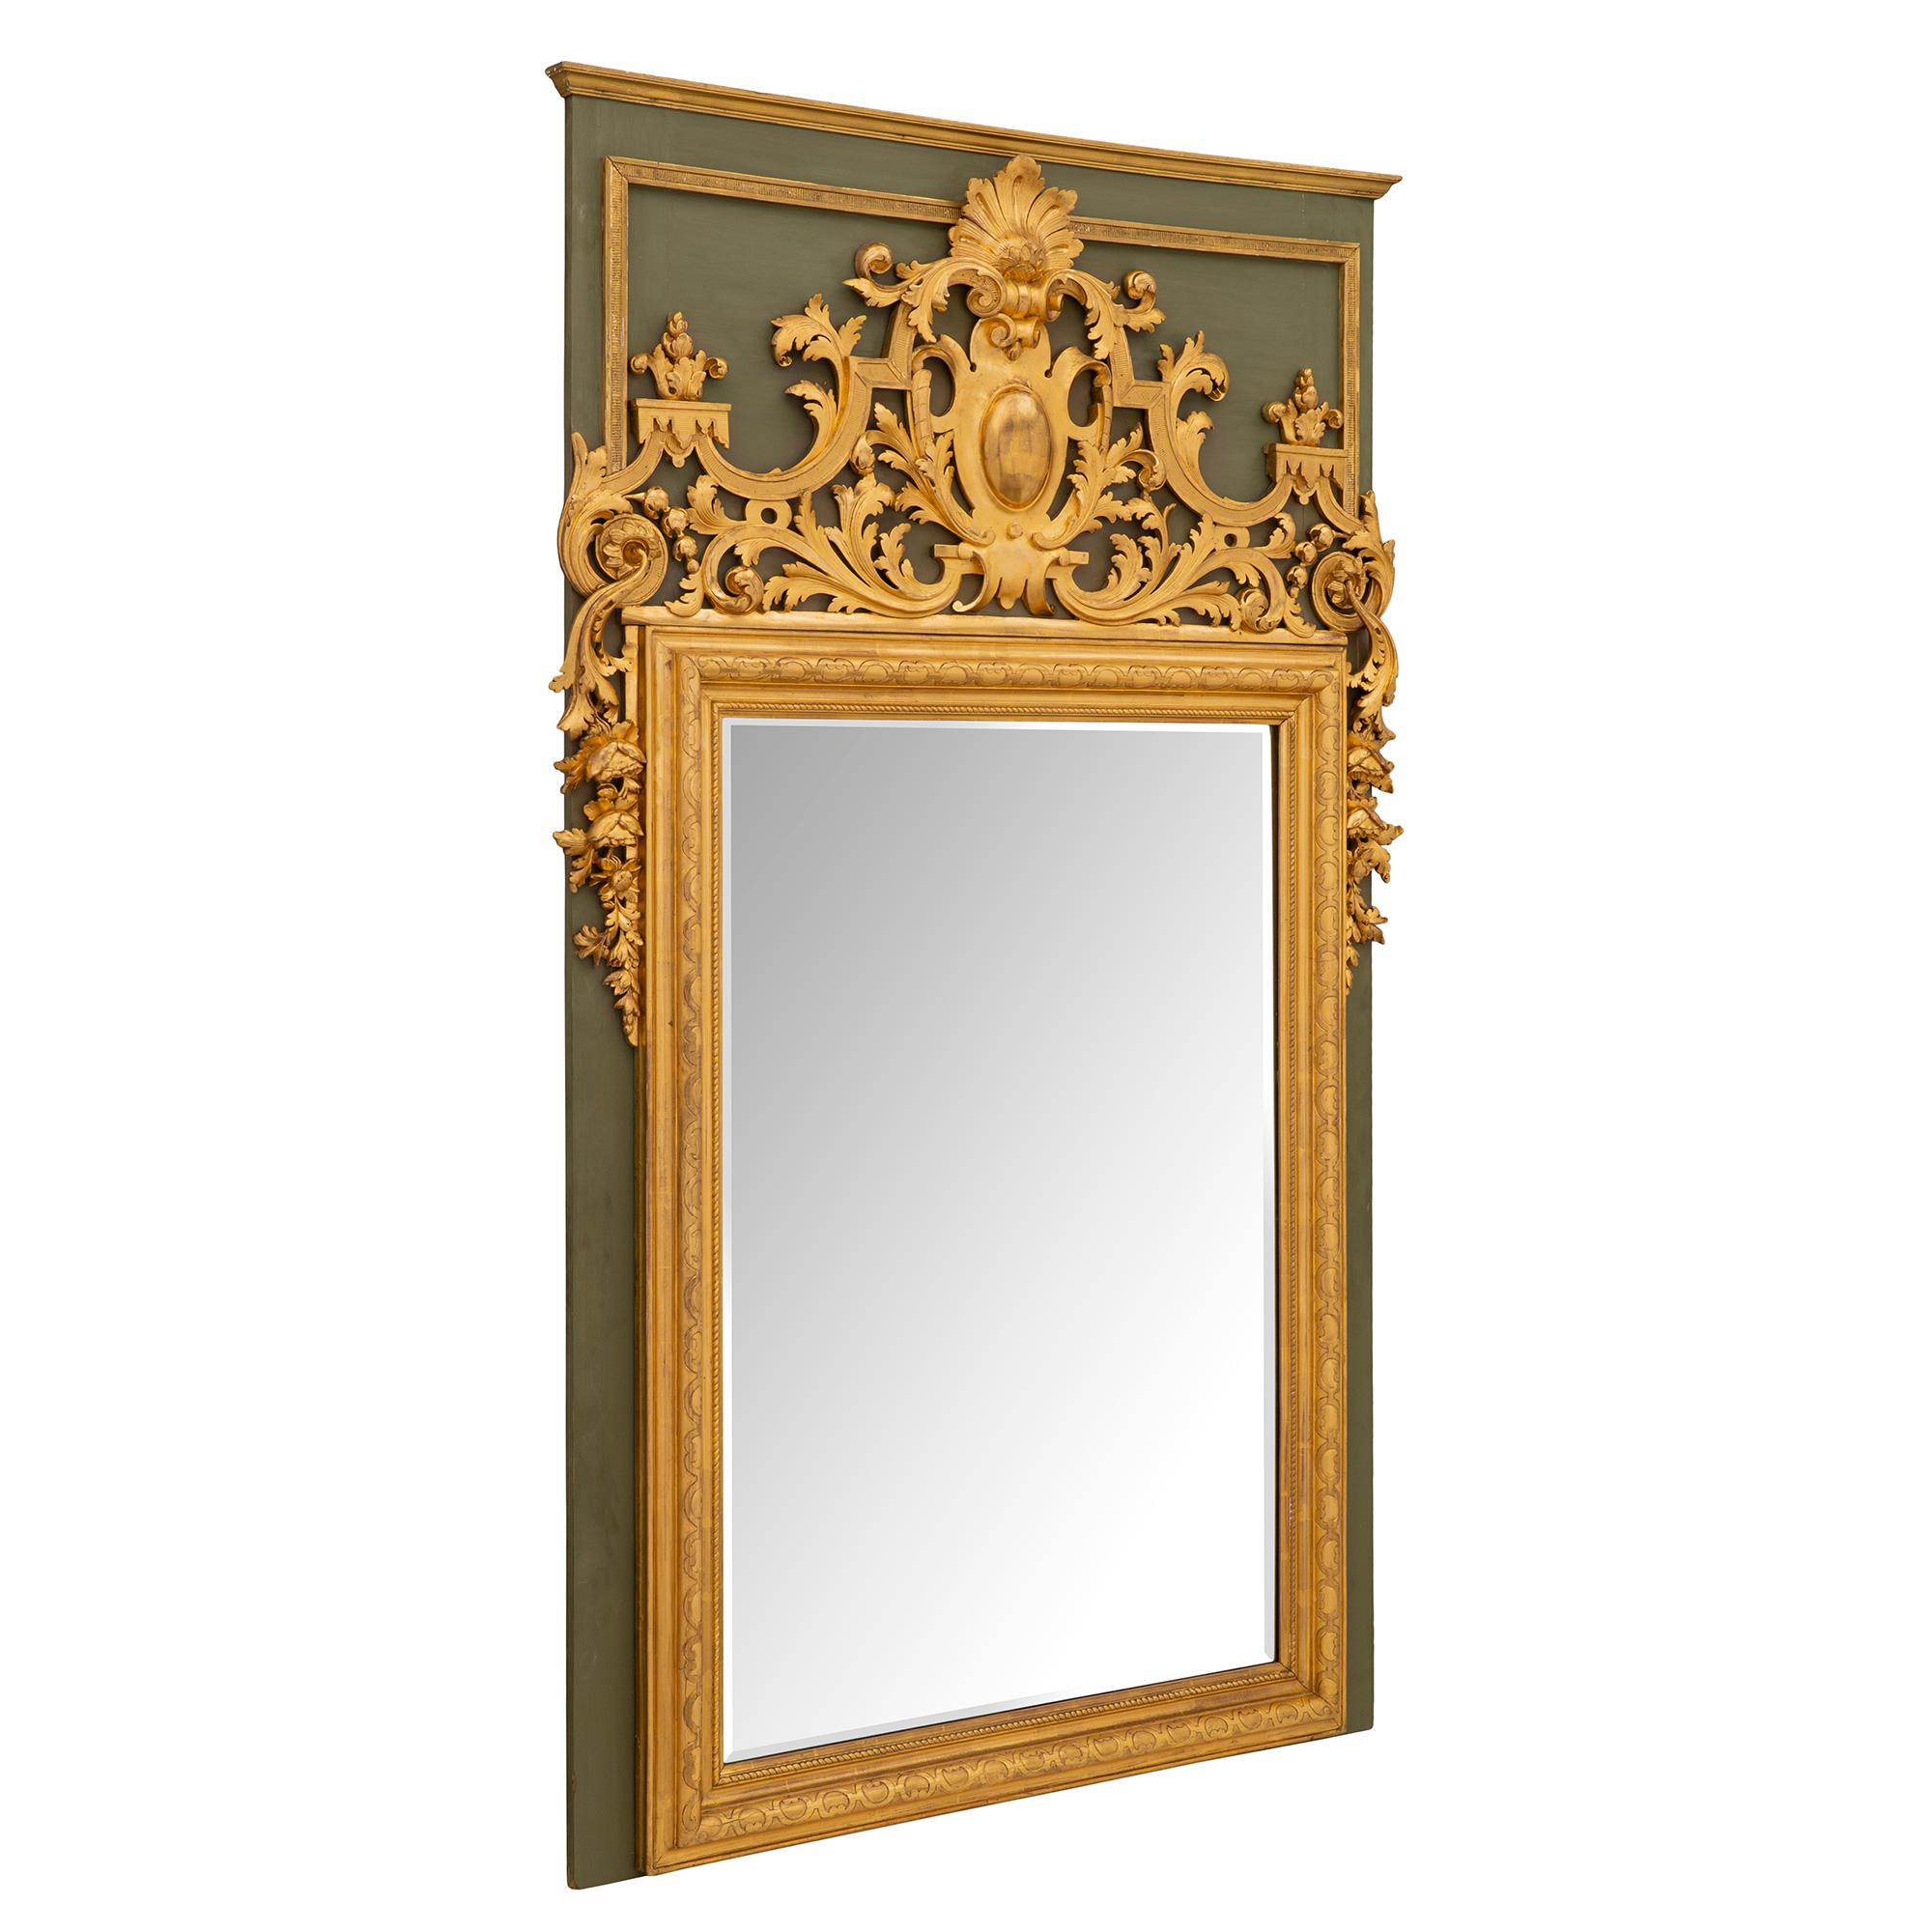 Superbe miroir français du XIXe siècle, de style Louis XIV, en bois polychrome et doré. La plaque de miroir biseautée d'origine est encadrée d'un bandeau très décoratif en forme de corde torsadée et d'une fine bordure en bois doré moucheté avec